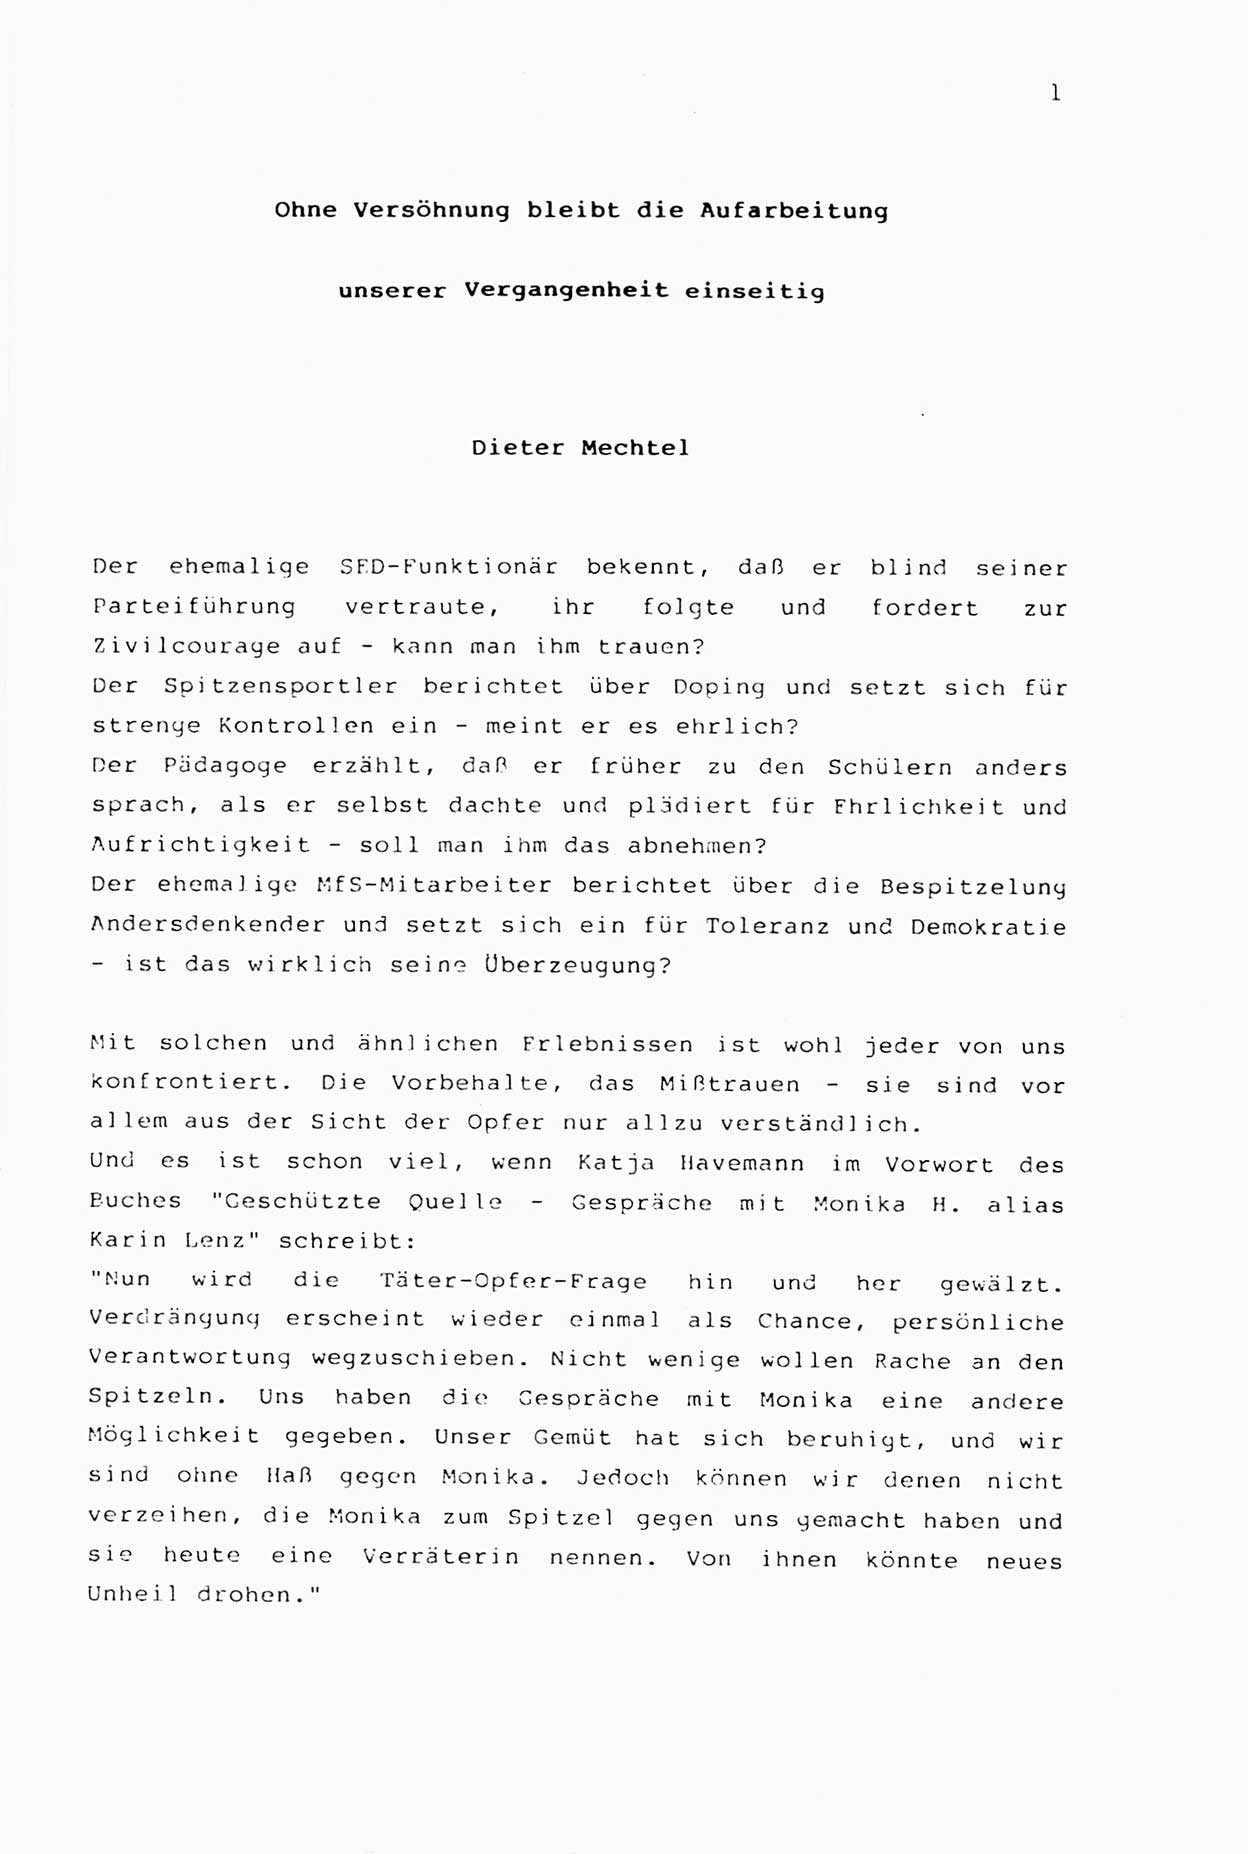 Zwie-Gespräch, Beiträge zur Aufarbeitung der Stasi-Vergangenheit [Deutsche Demokratische Republik (DDR)], Ausgabe Nr. 2, Berlin 1991, Seite 1 (Zwie-Gespr. Ausg. 2 1991, S. 1)